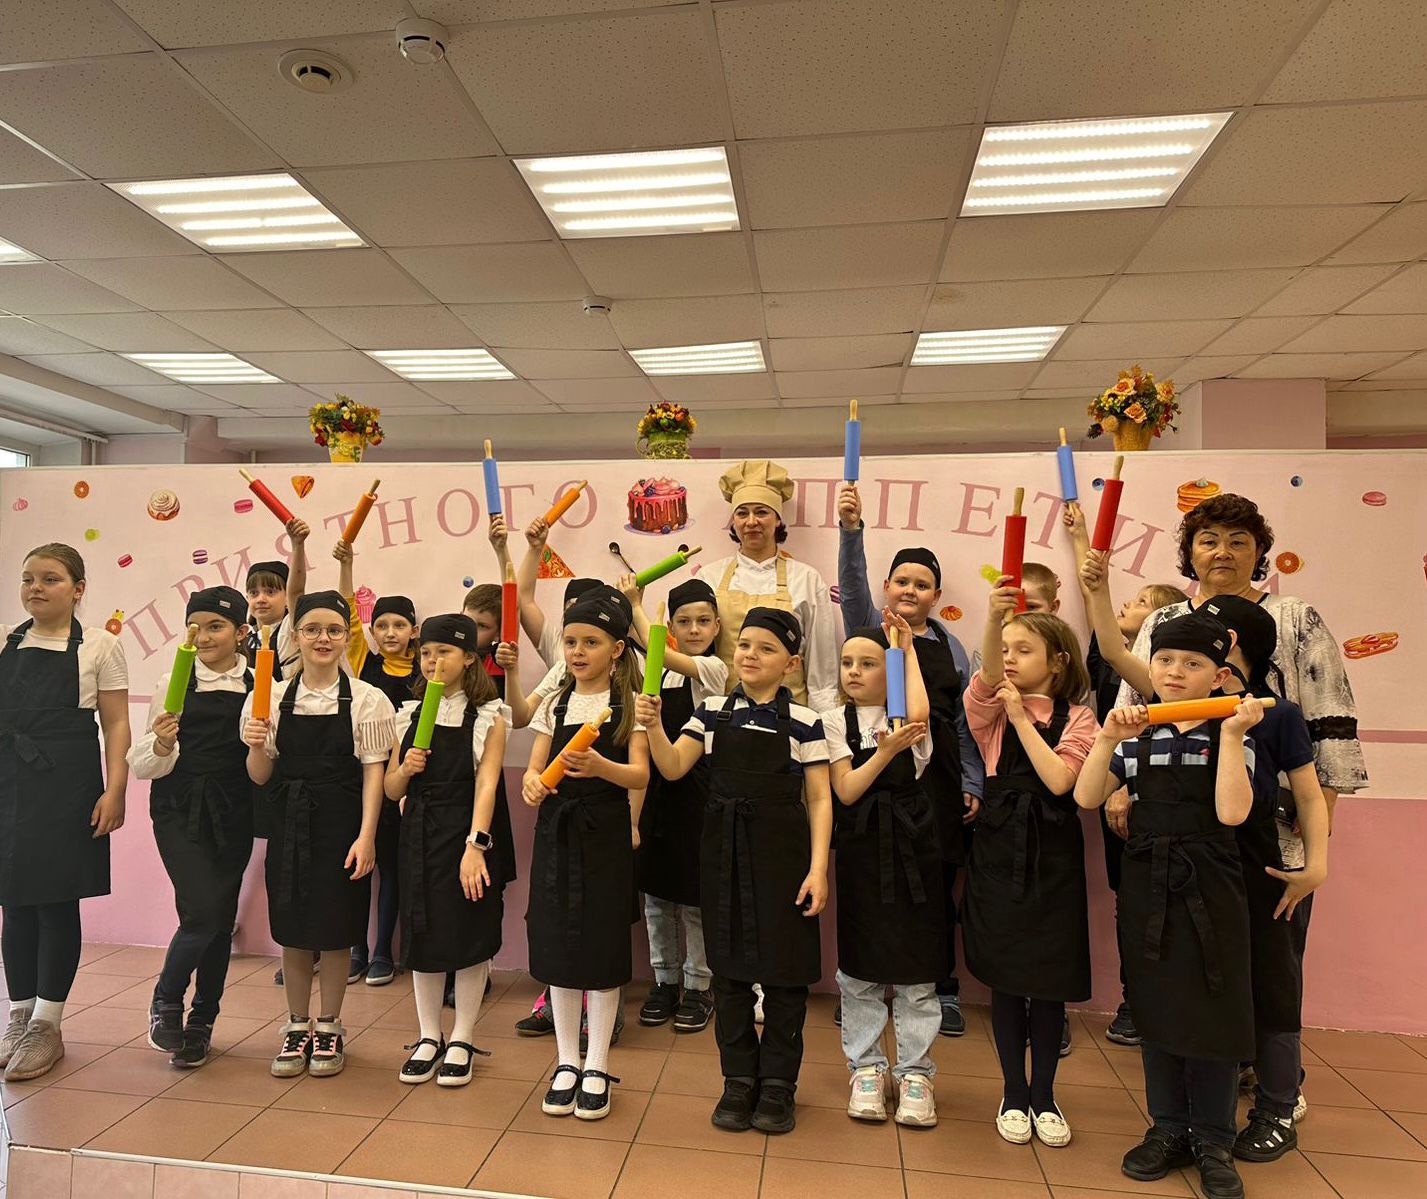 Кулинарный мастер-класс по приготовлению воздушных рогаликов прошел для учащихся младших классов в столичной школе № 1015, фото